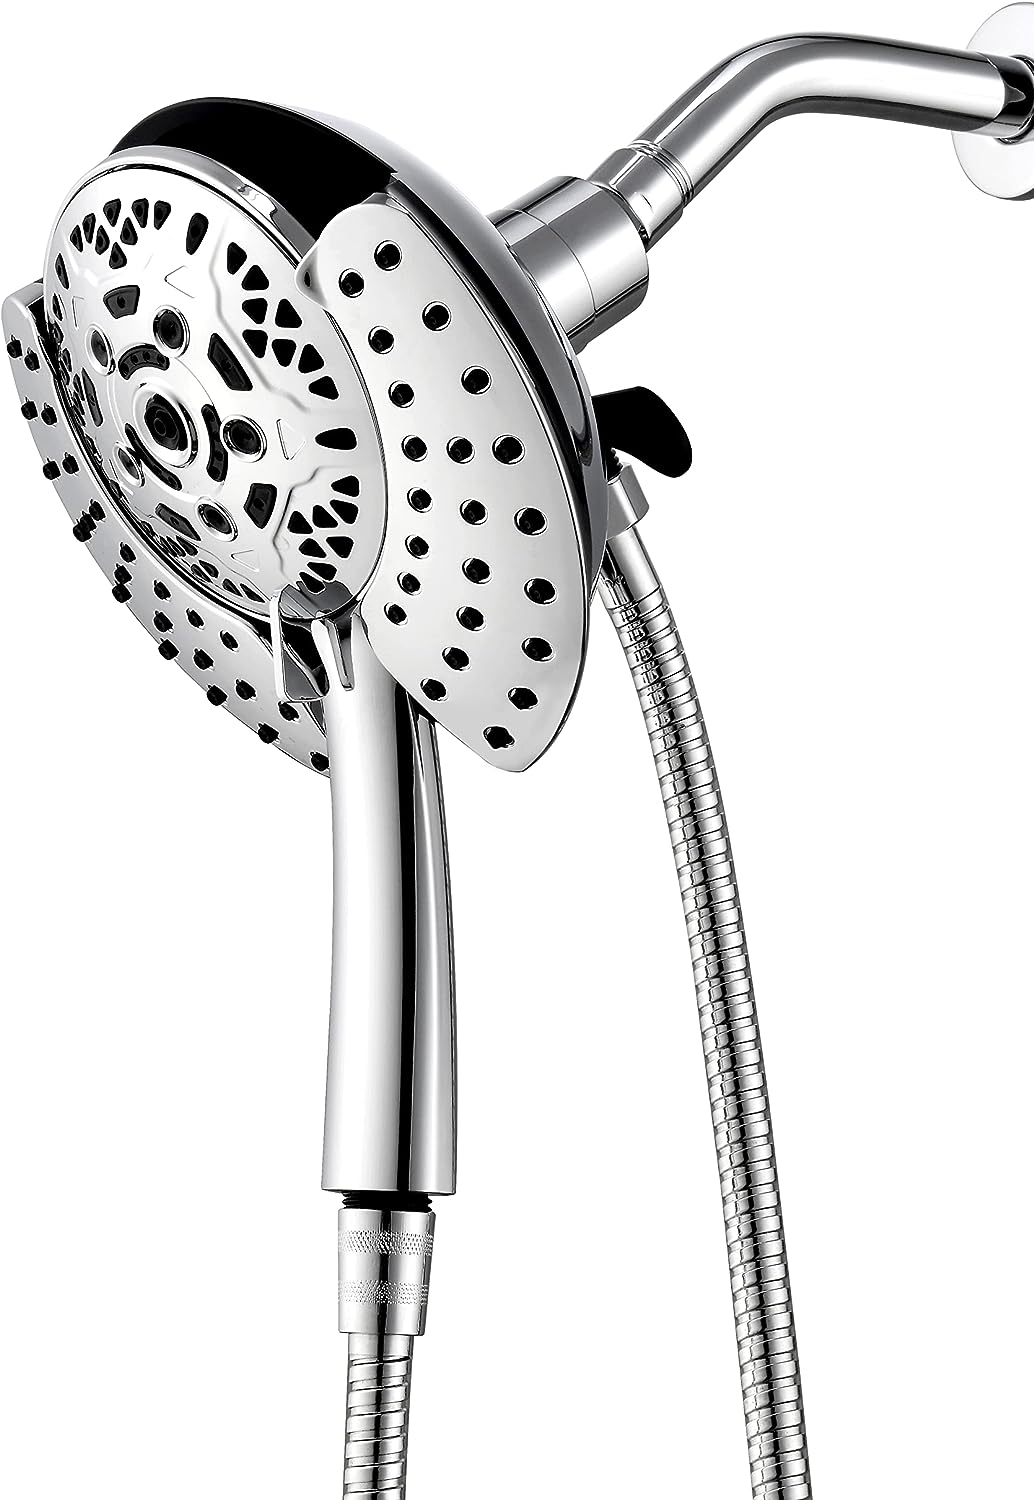 Cabezal de ducha de alta presión y ducha manual con manguera de 70 pul -  VIRTUAL MUEBLES